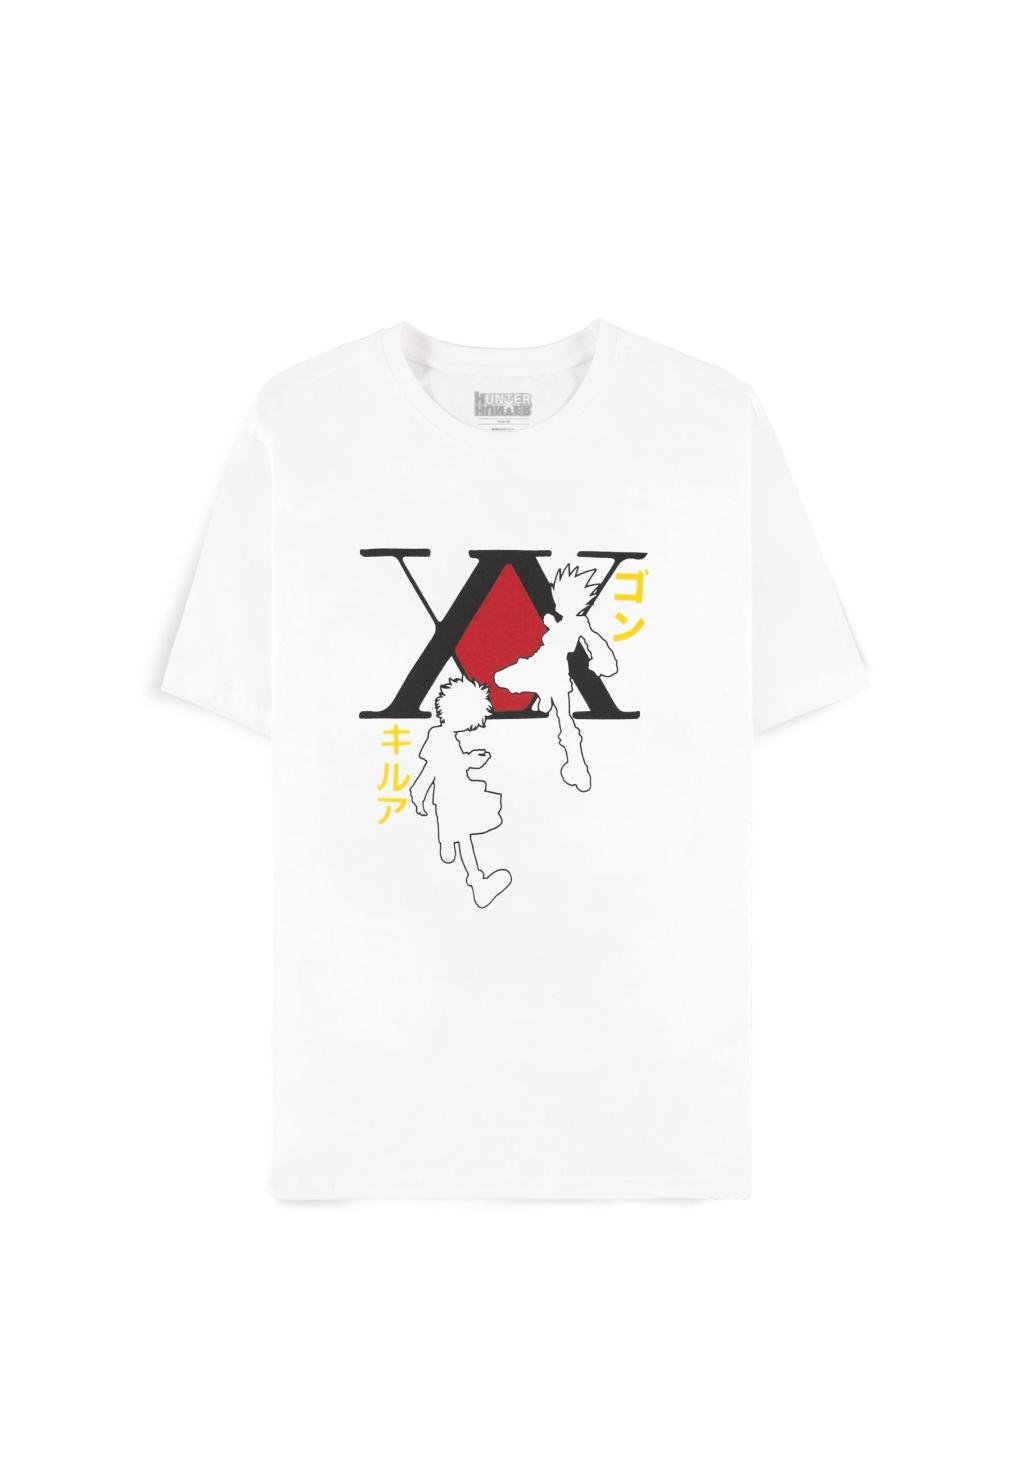 HUNTER X HUNTER - Gon & Kirua - Men's T-shirt (L)